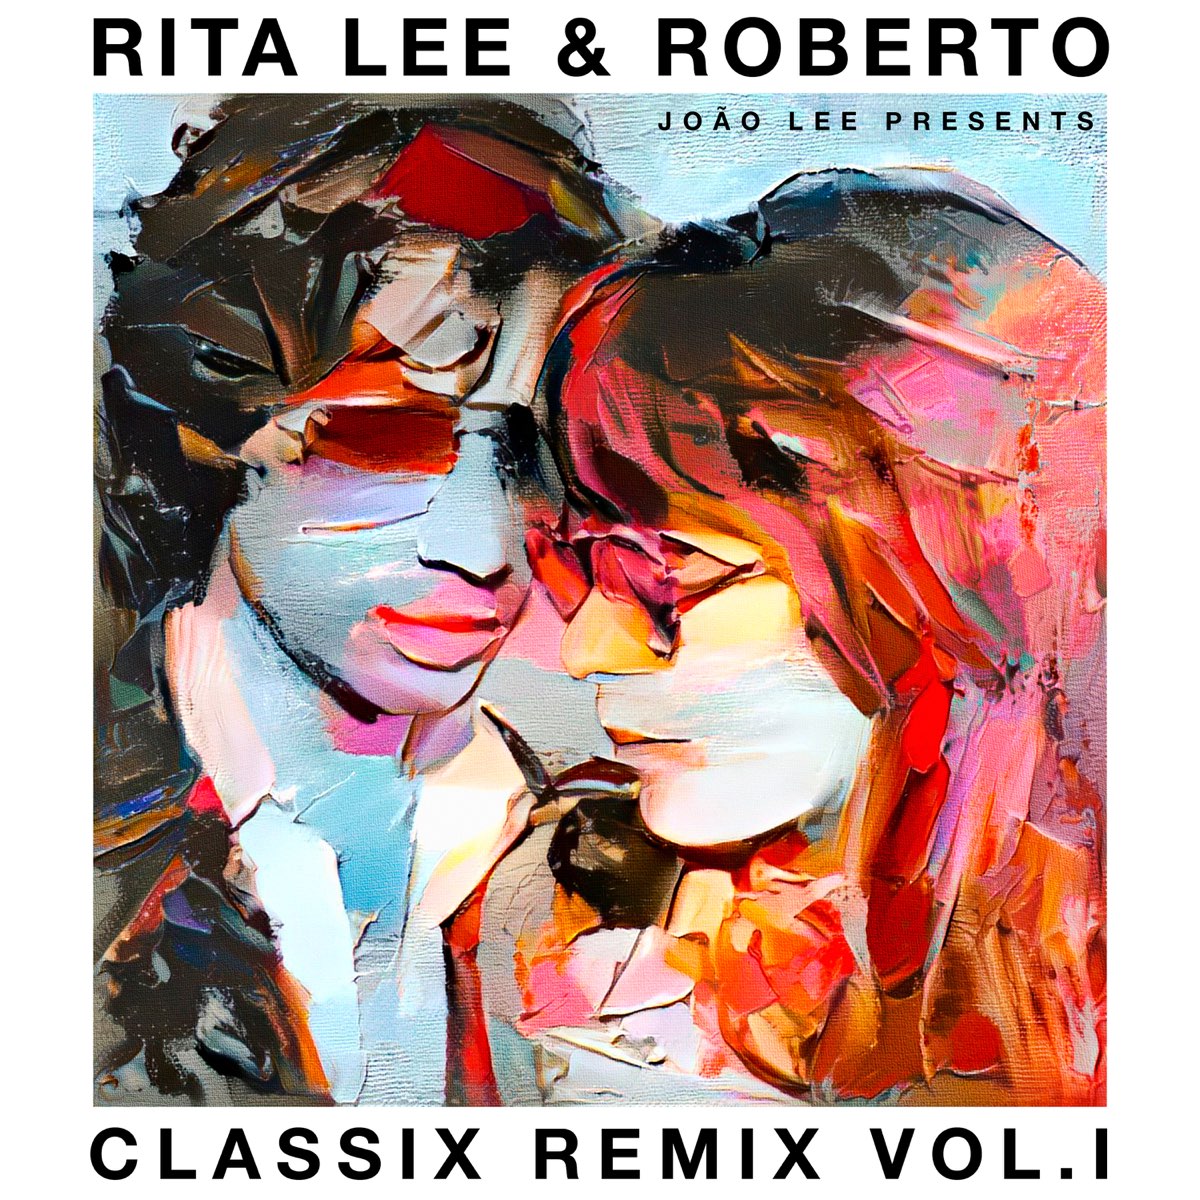 Rita Lee & Roberto – Classix Remix Vol. l by Rita Lee on Apple Music